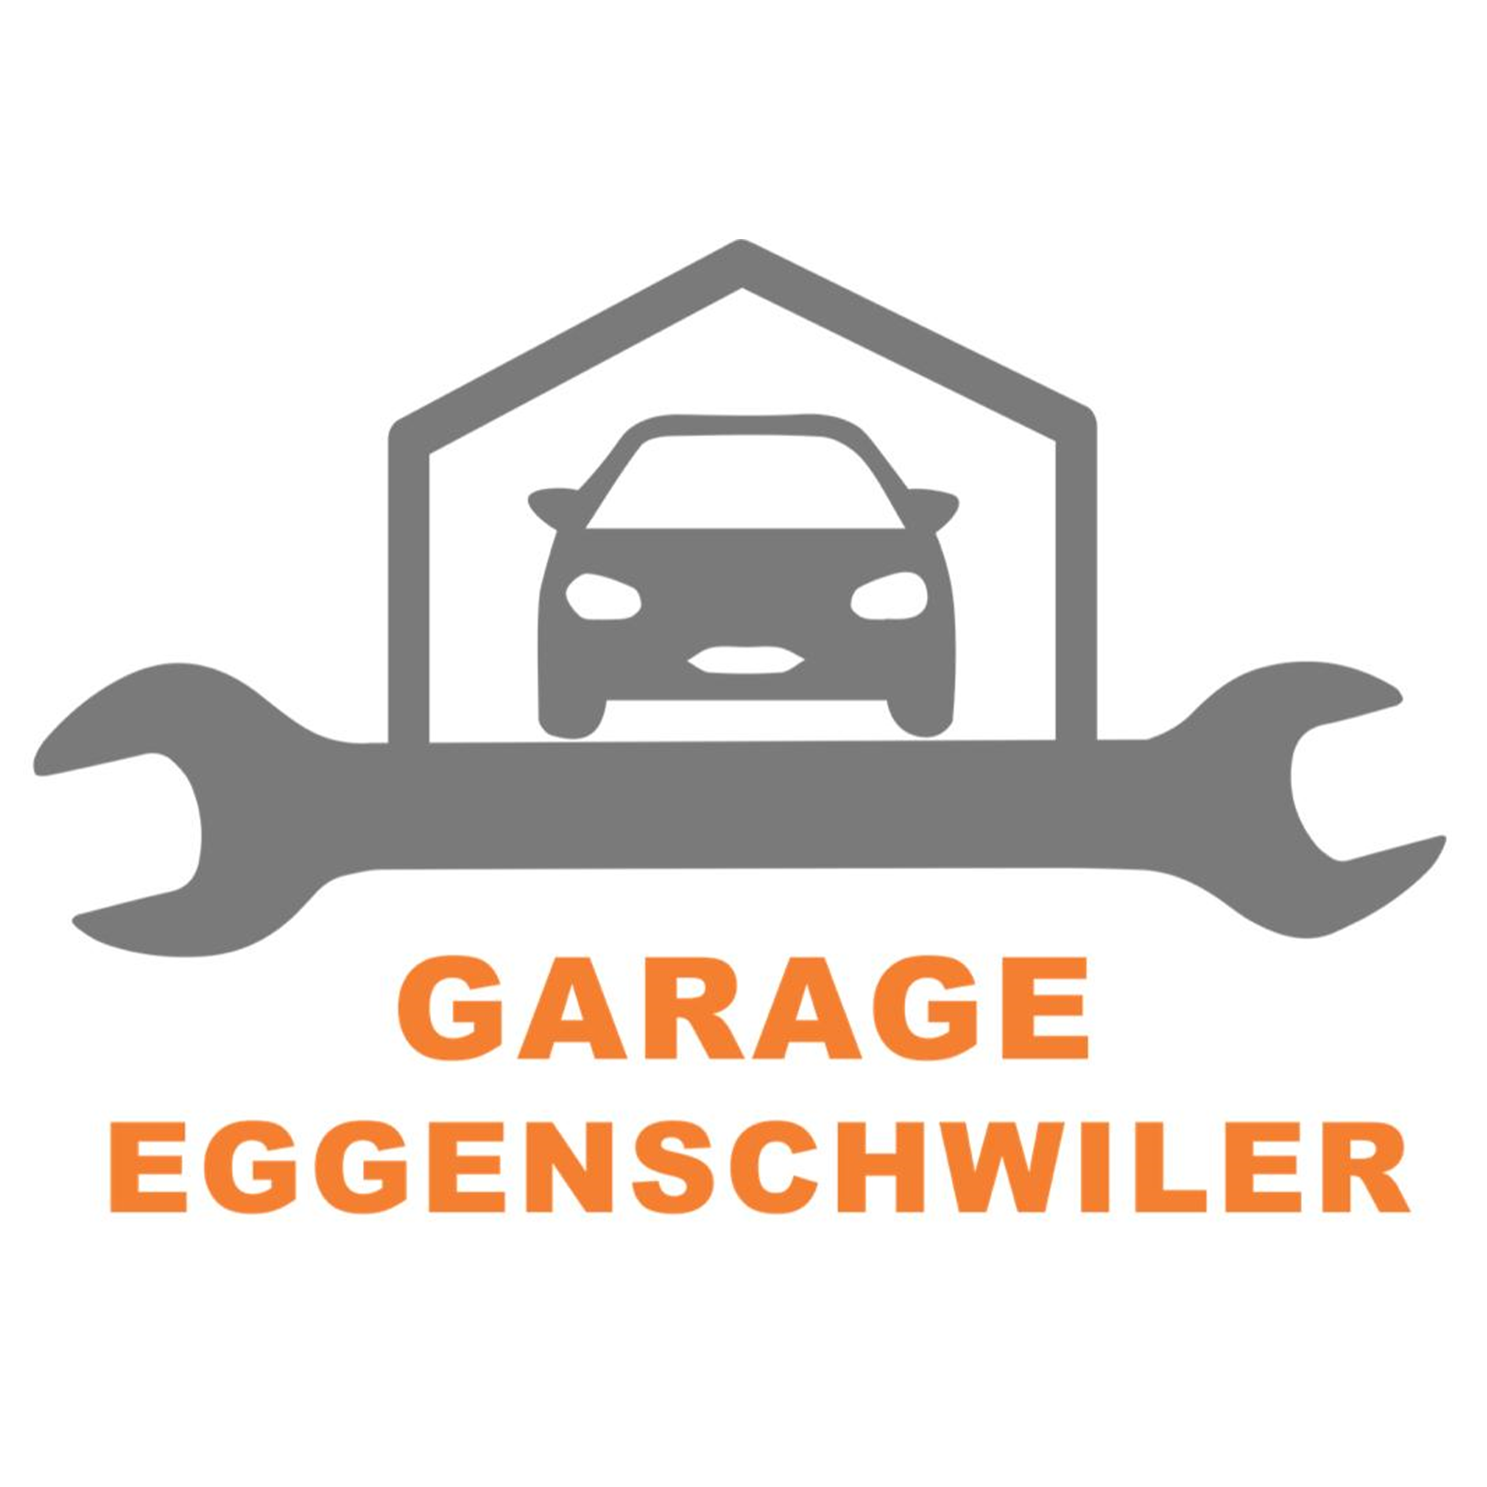 Garage Eggenschwiler GmbH Logo